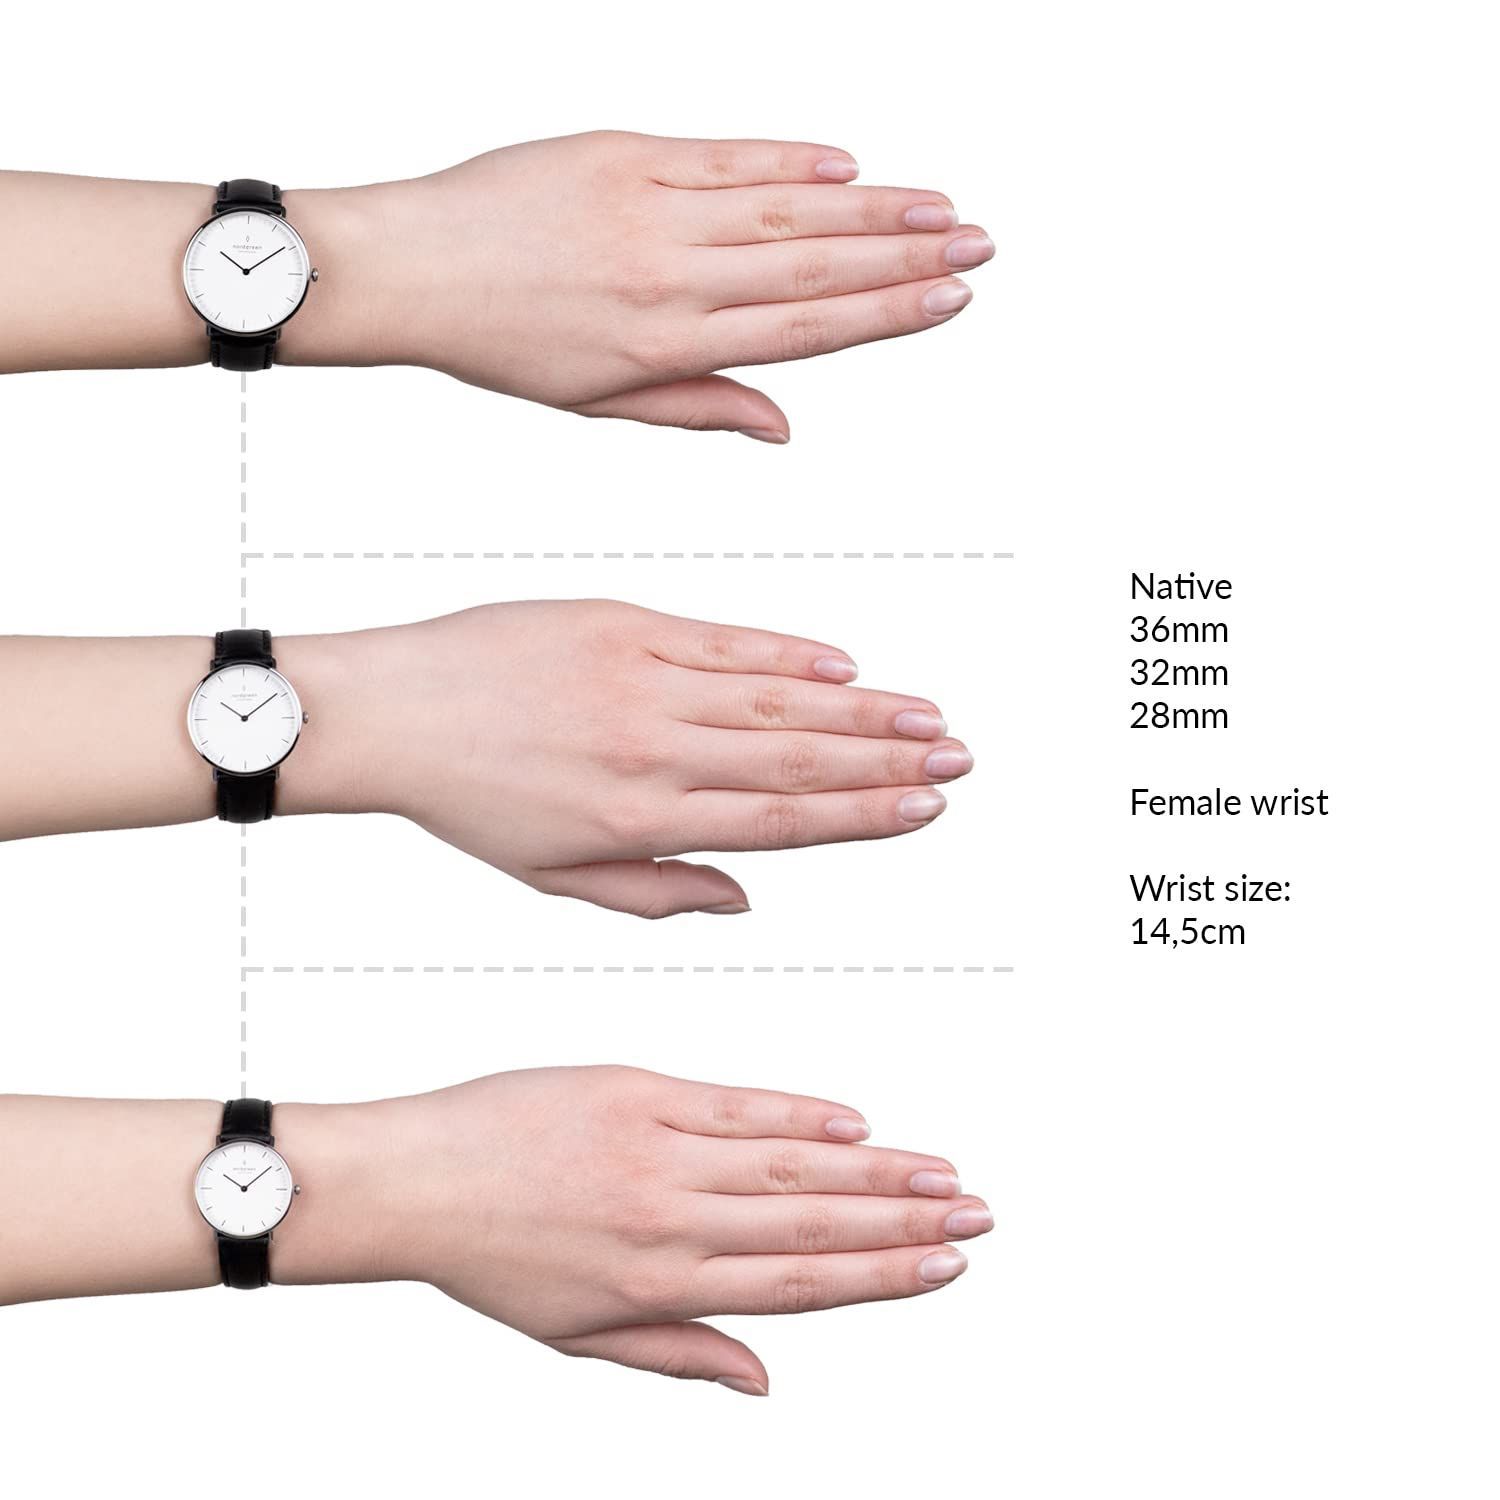 ベルトは2本お付けしますNordgreen 腕時計 32mm Native ベルト2本セット